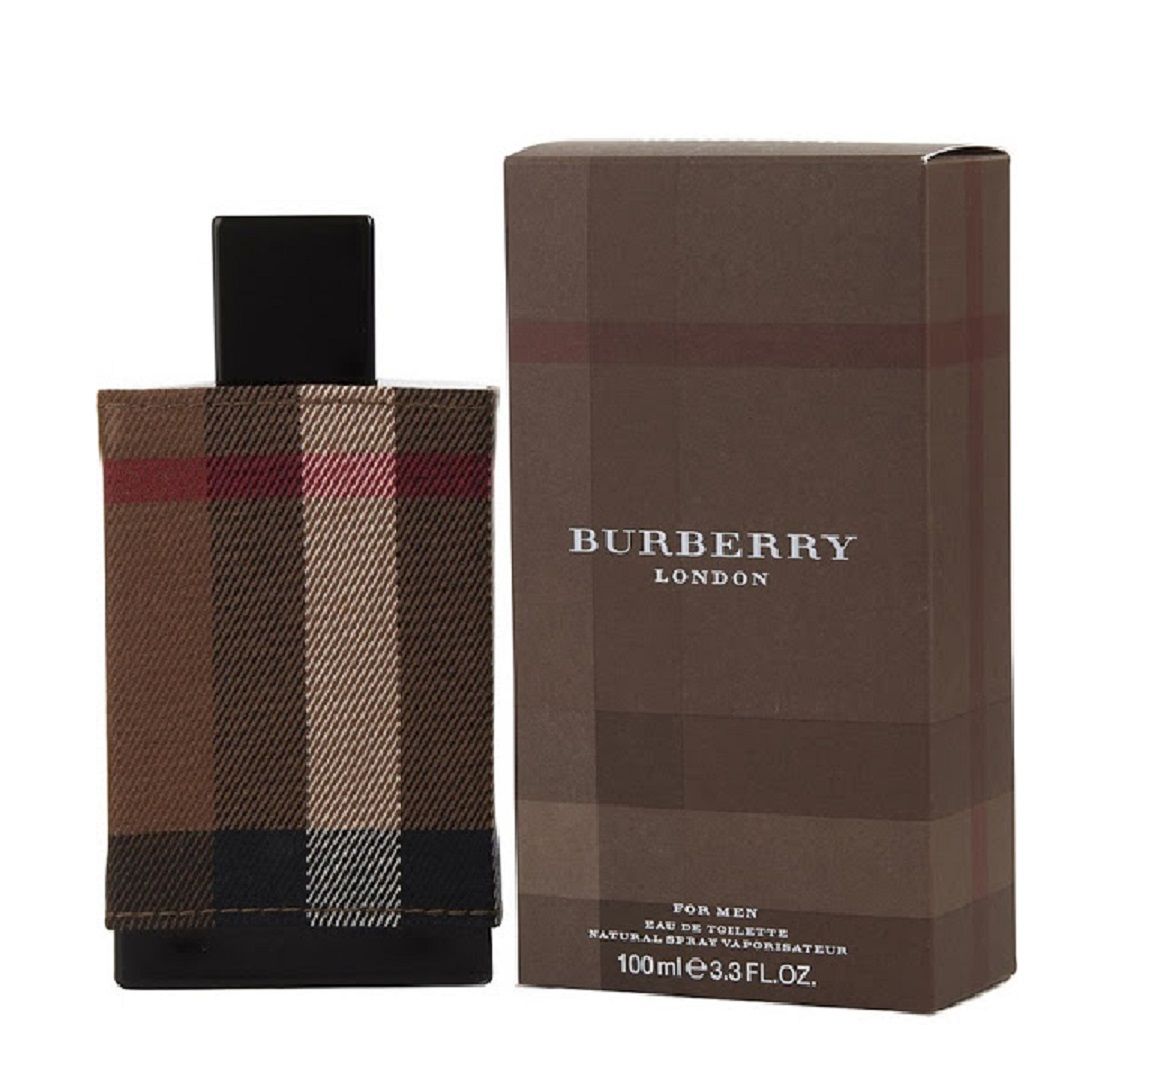 Buy Burberry London for Men EDT (100 ml) - Purplle